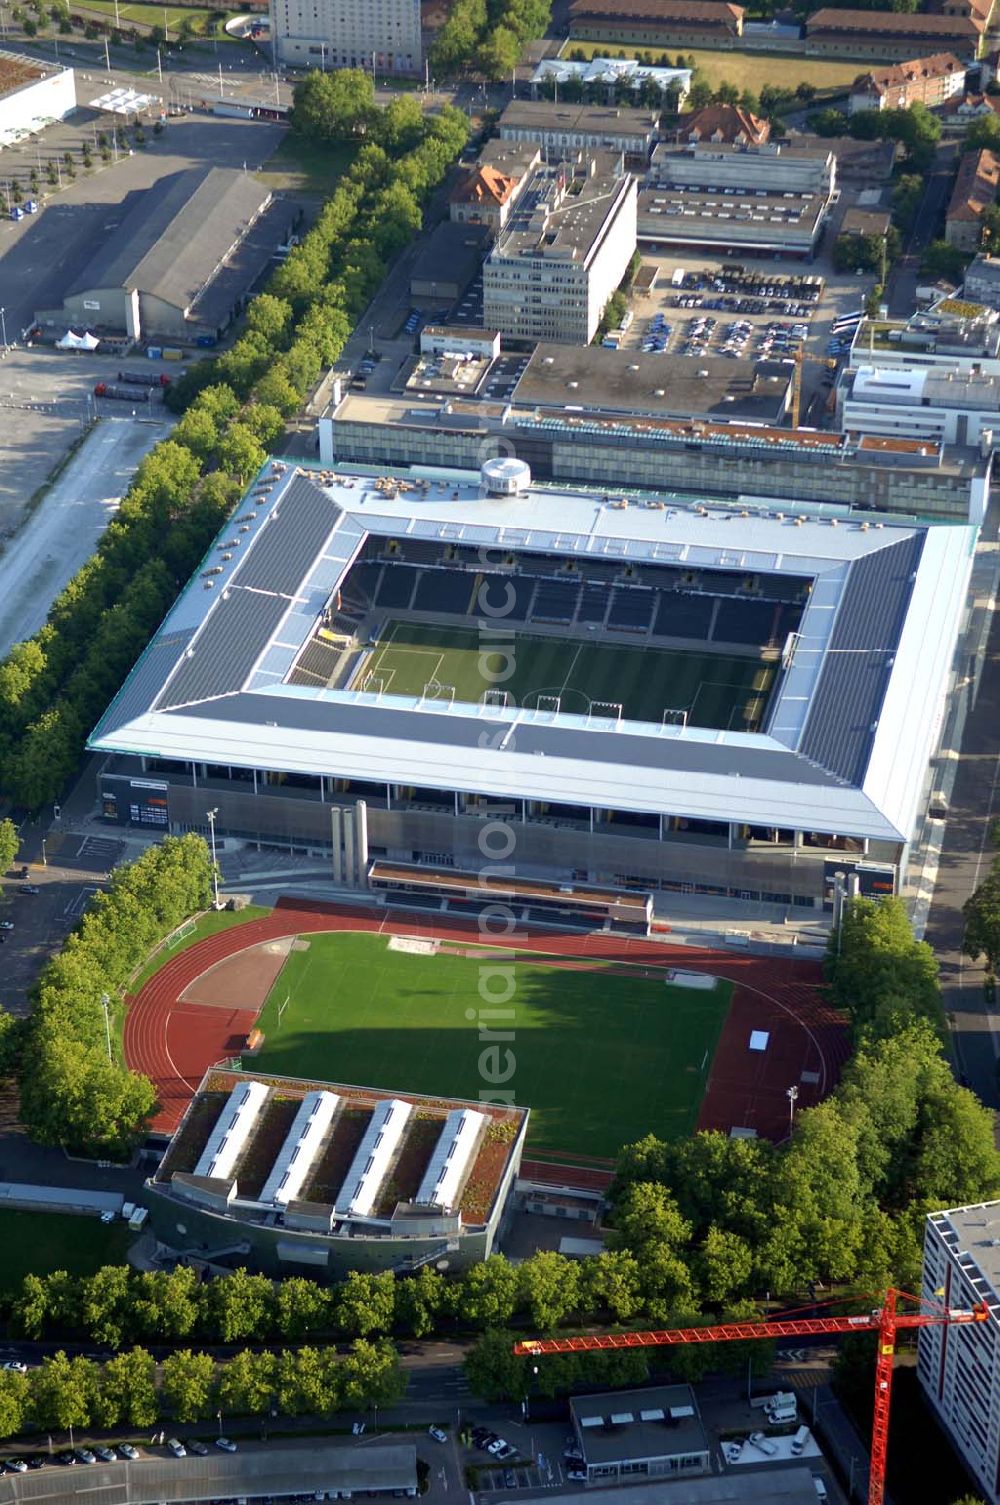 Aerial photograph Bern - Das Stadion Stade de Suisse Wankdorf Bern steht im Wankdorfquartier der Stadt in der Schweiz. Die Arena ist Heimstatt des Berner Fussballvereins BSC Young Boys (YB) und wurde durch die Baufirma Marazzi Generalunternehmung ( heute Losinger Construction AG) und die Baltensperger AG errichtet.